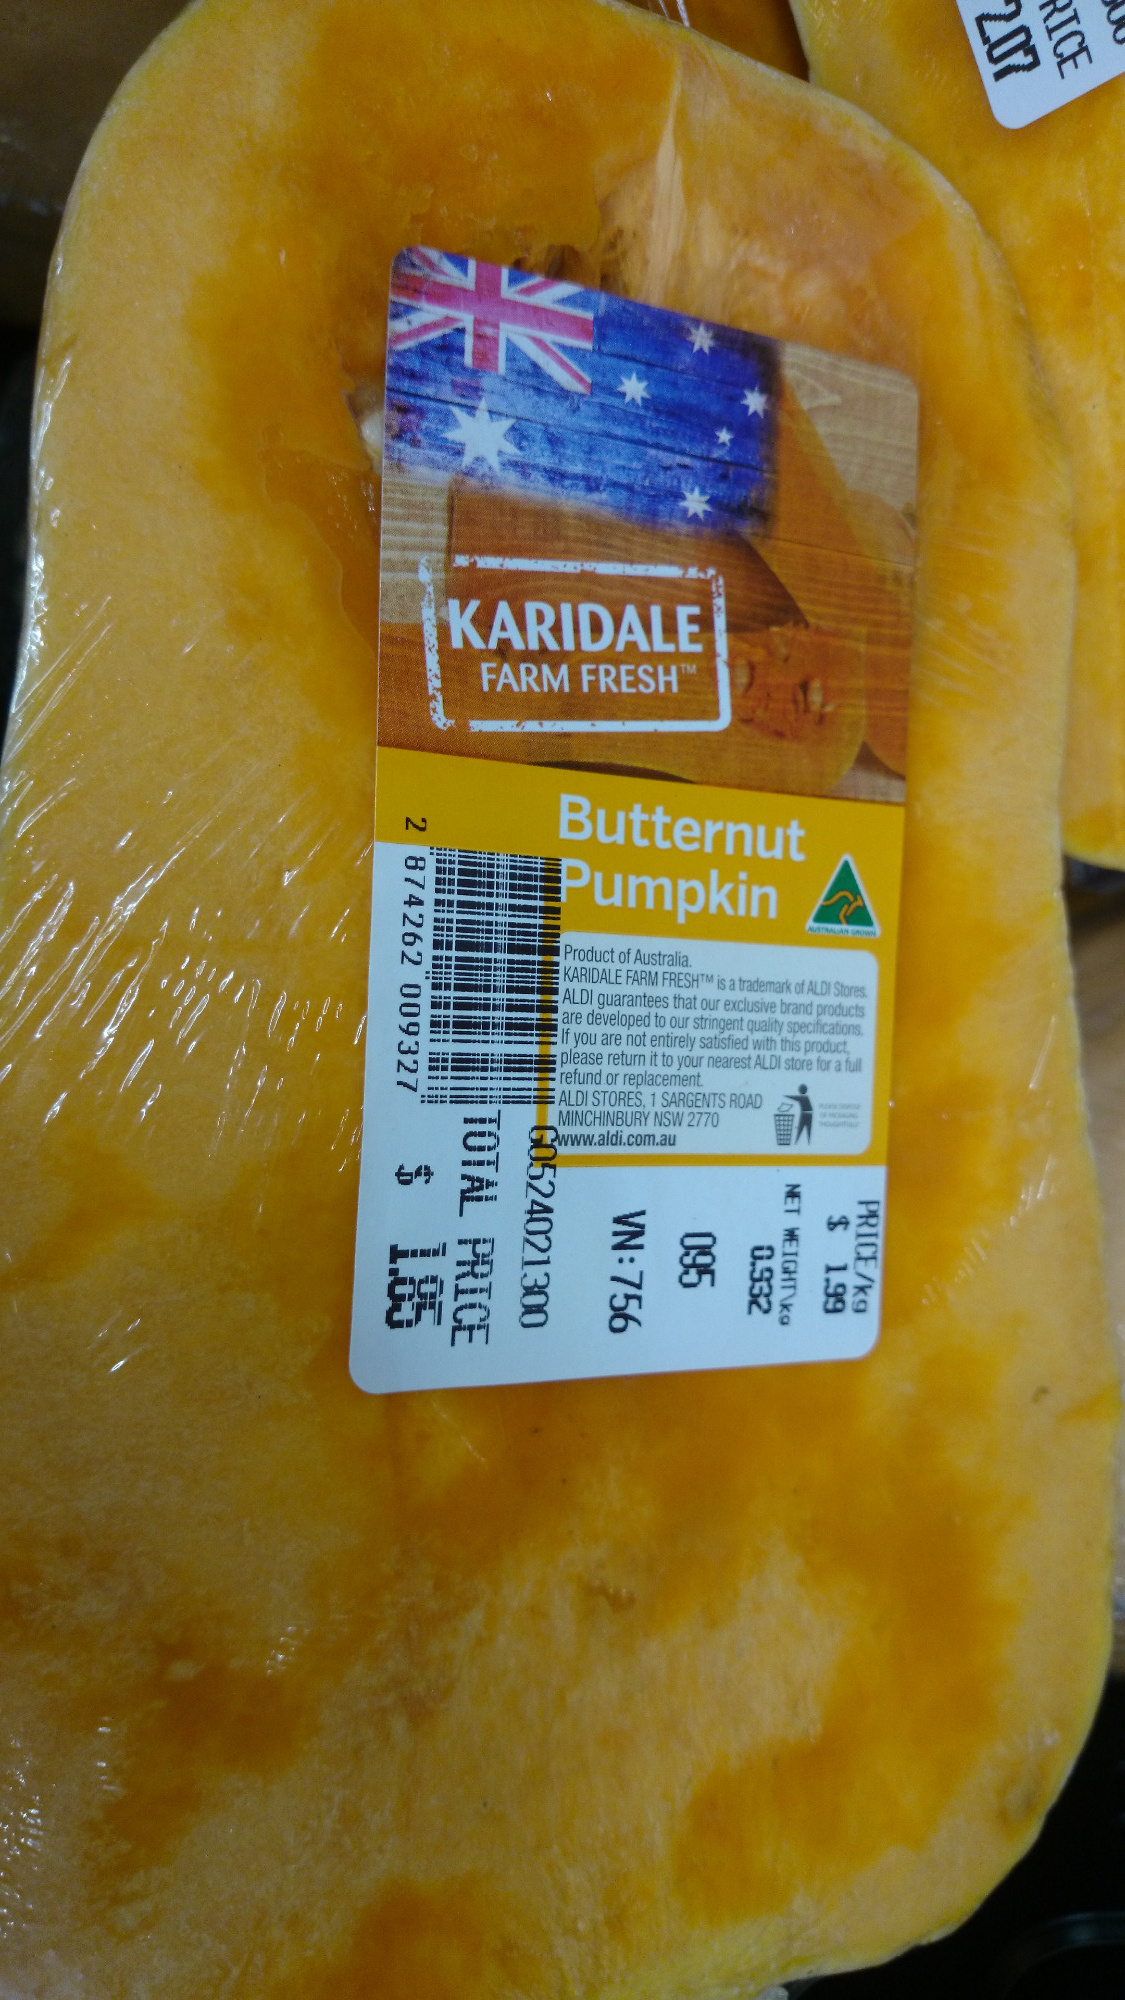 Butternut Pumpkin - Product